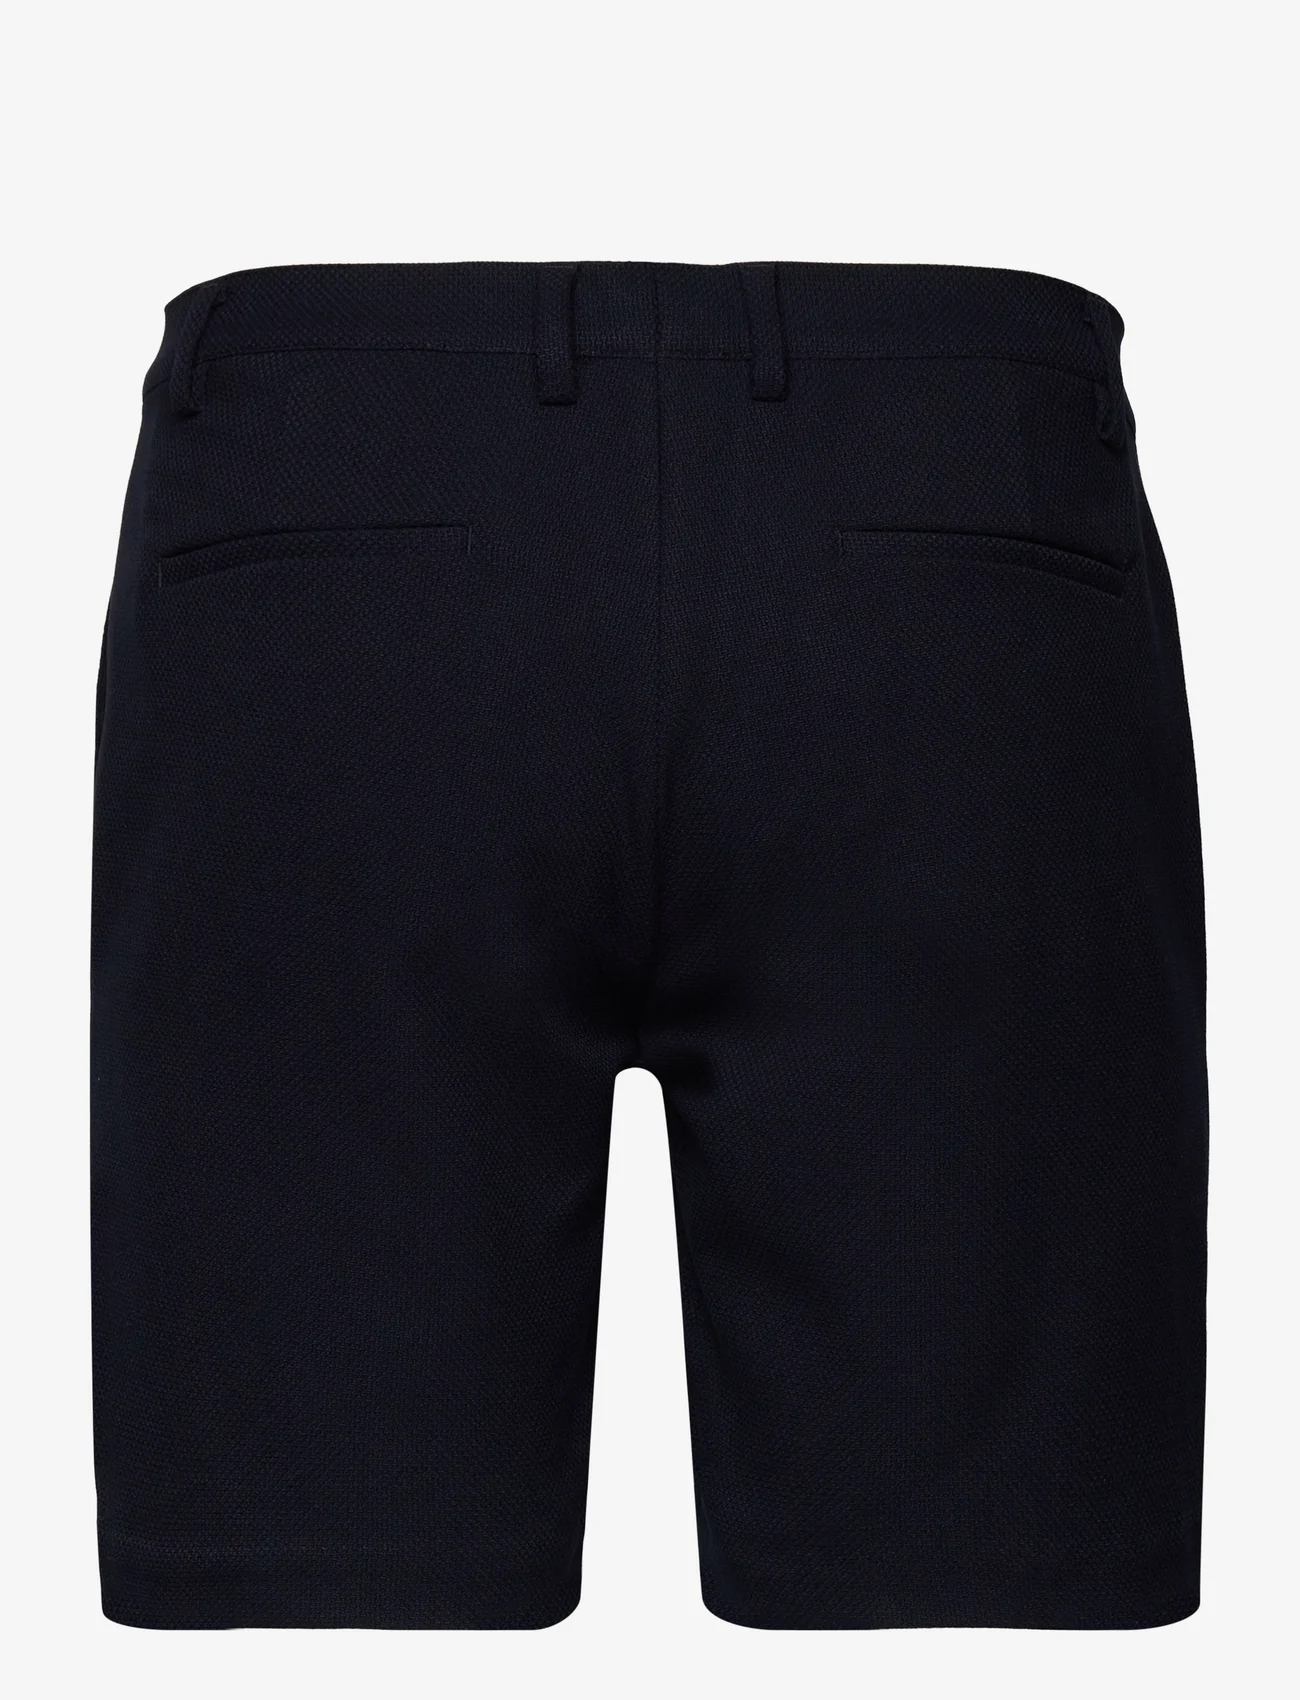 Urban Pioneers - Bate shorts - navy - 1